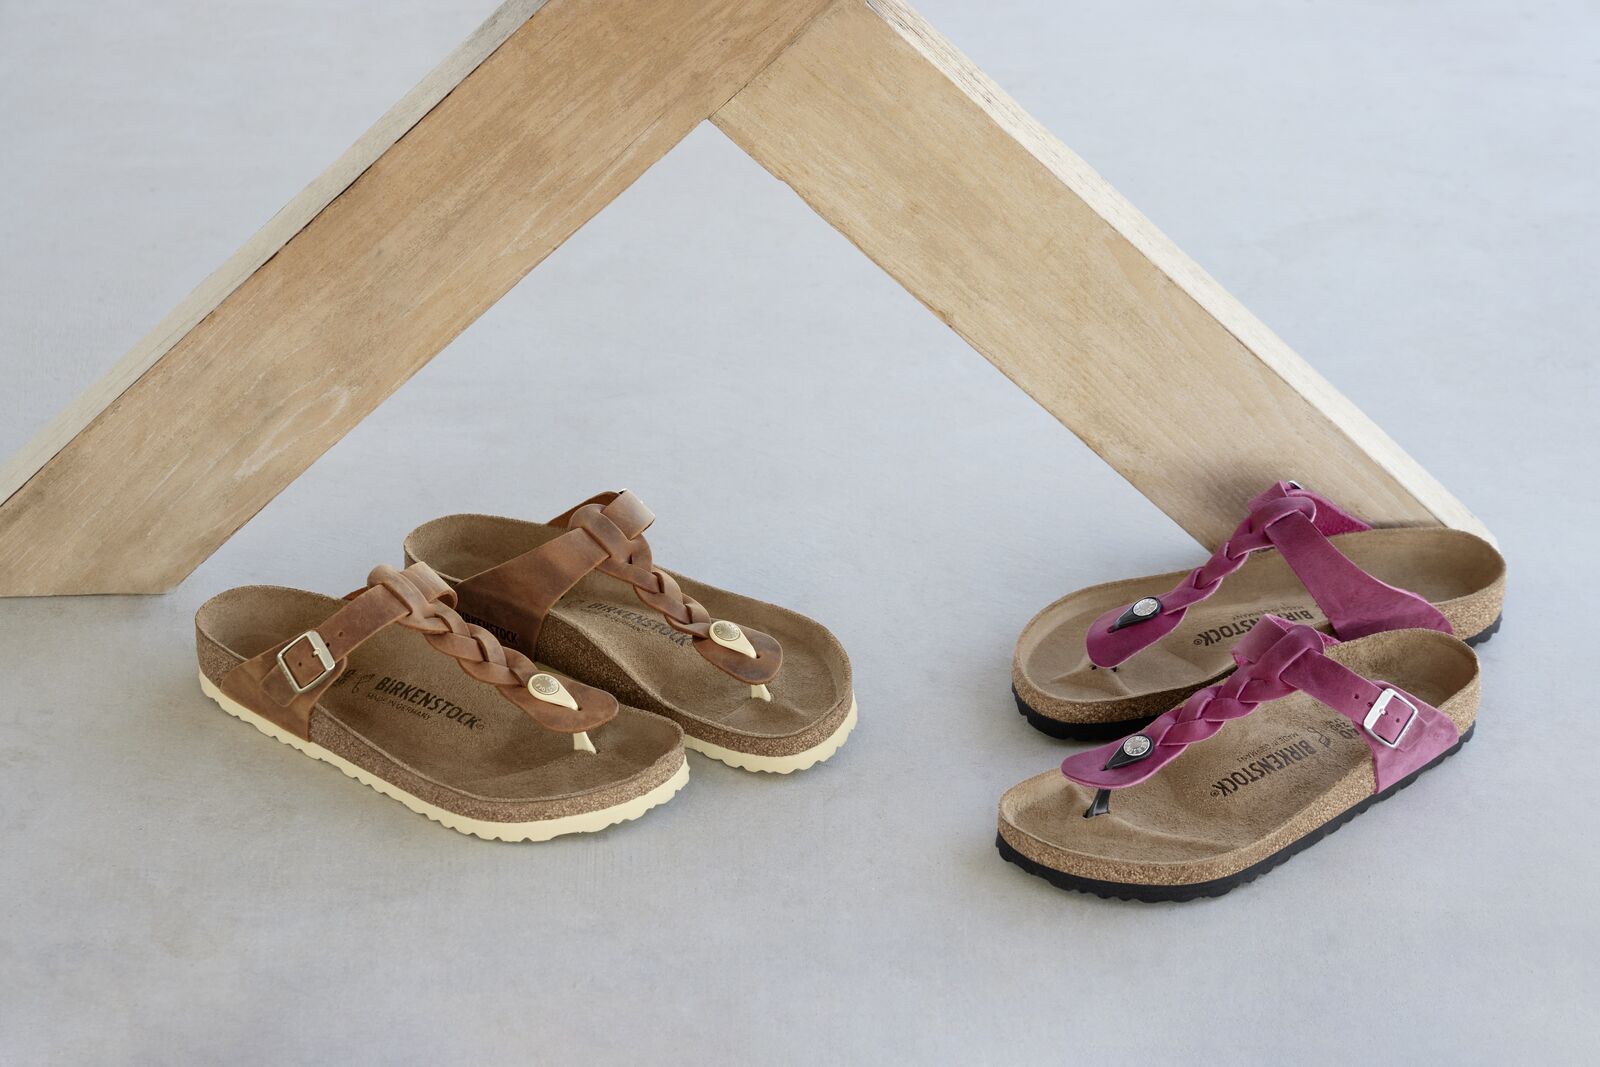 Birkenstock Braided Sandals